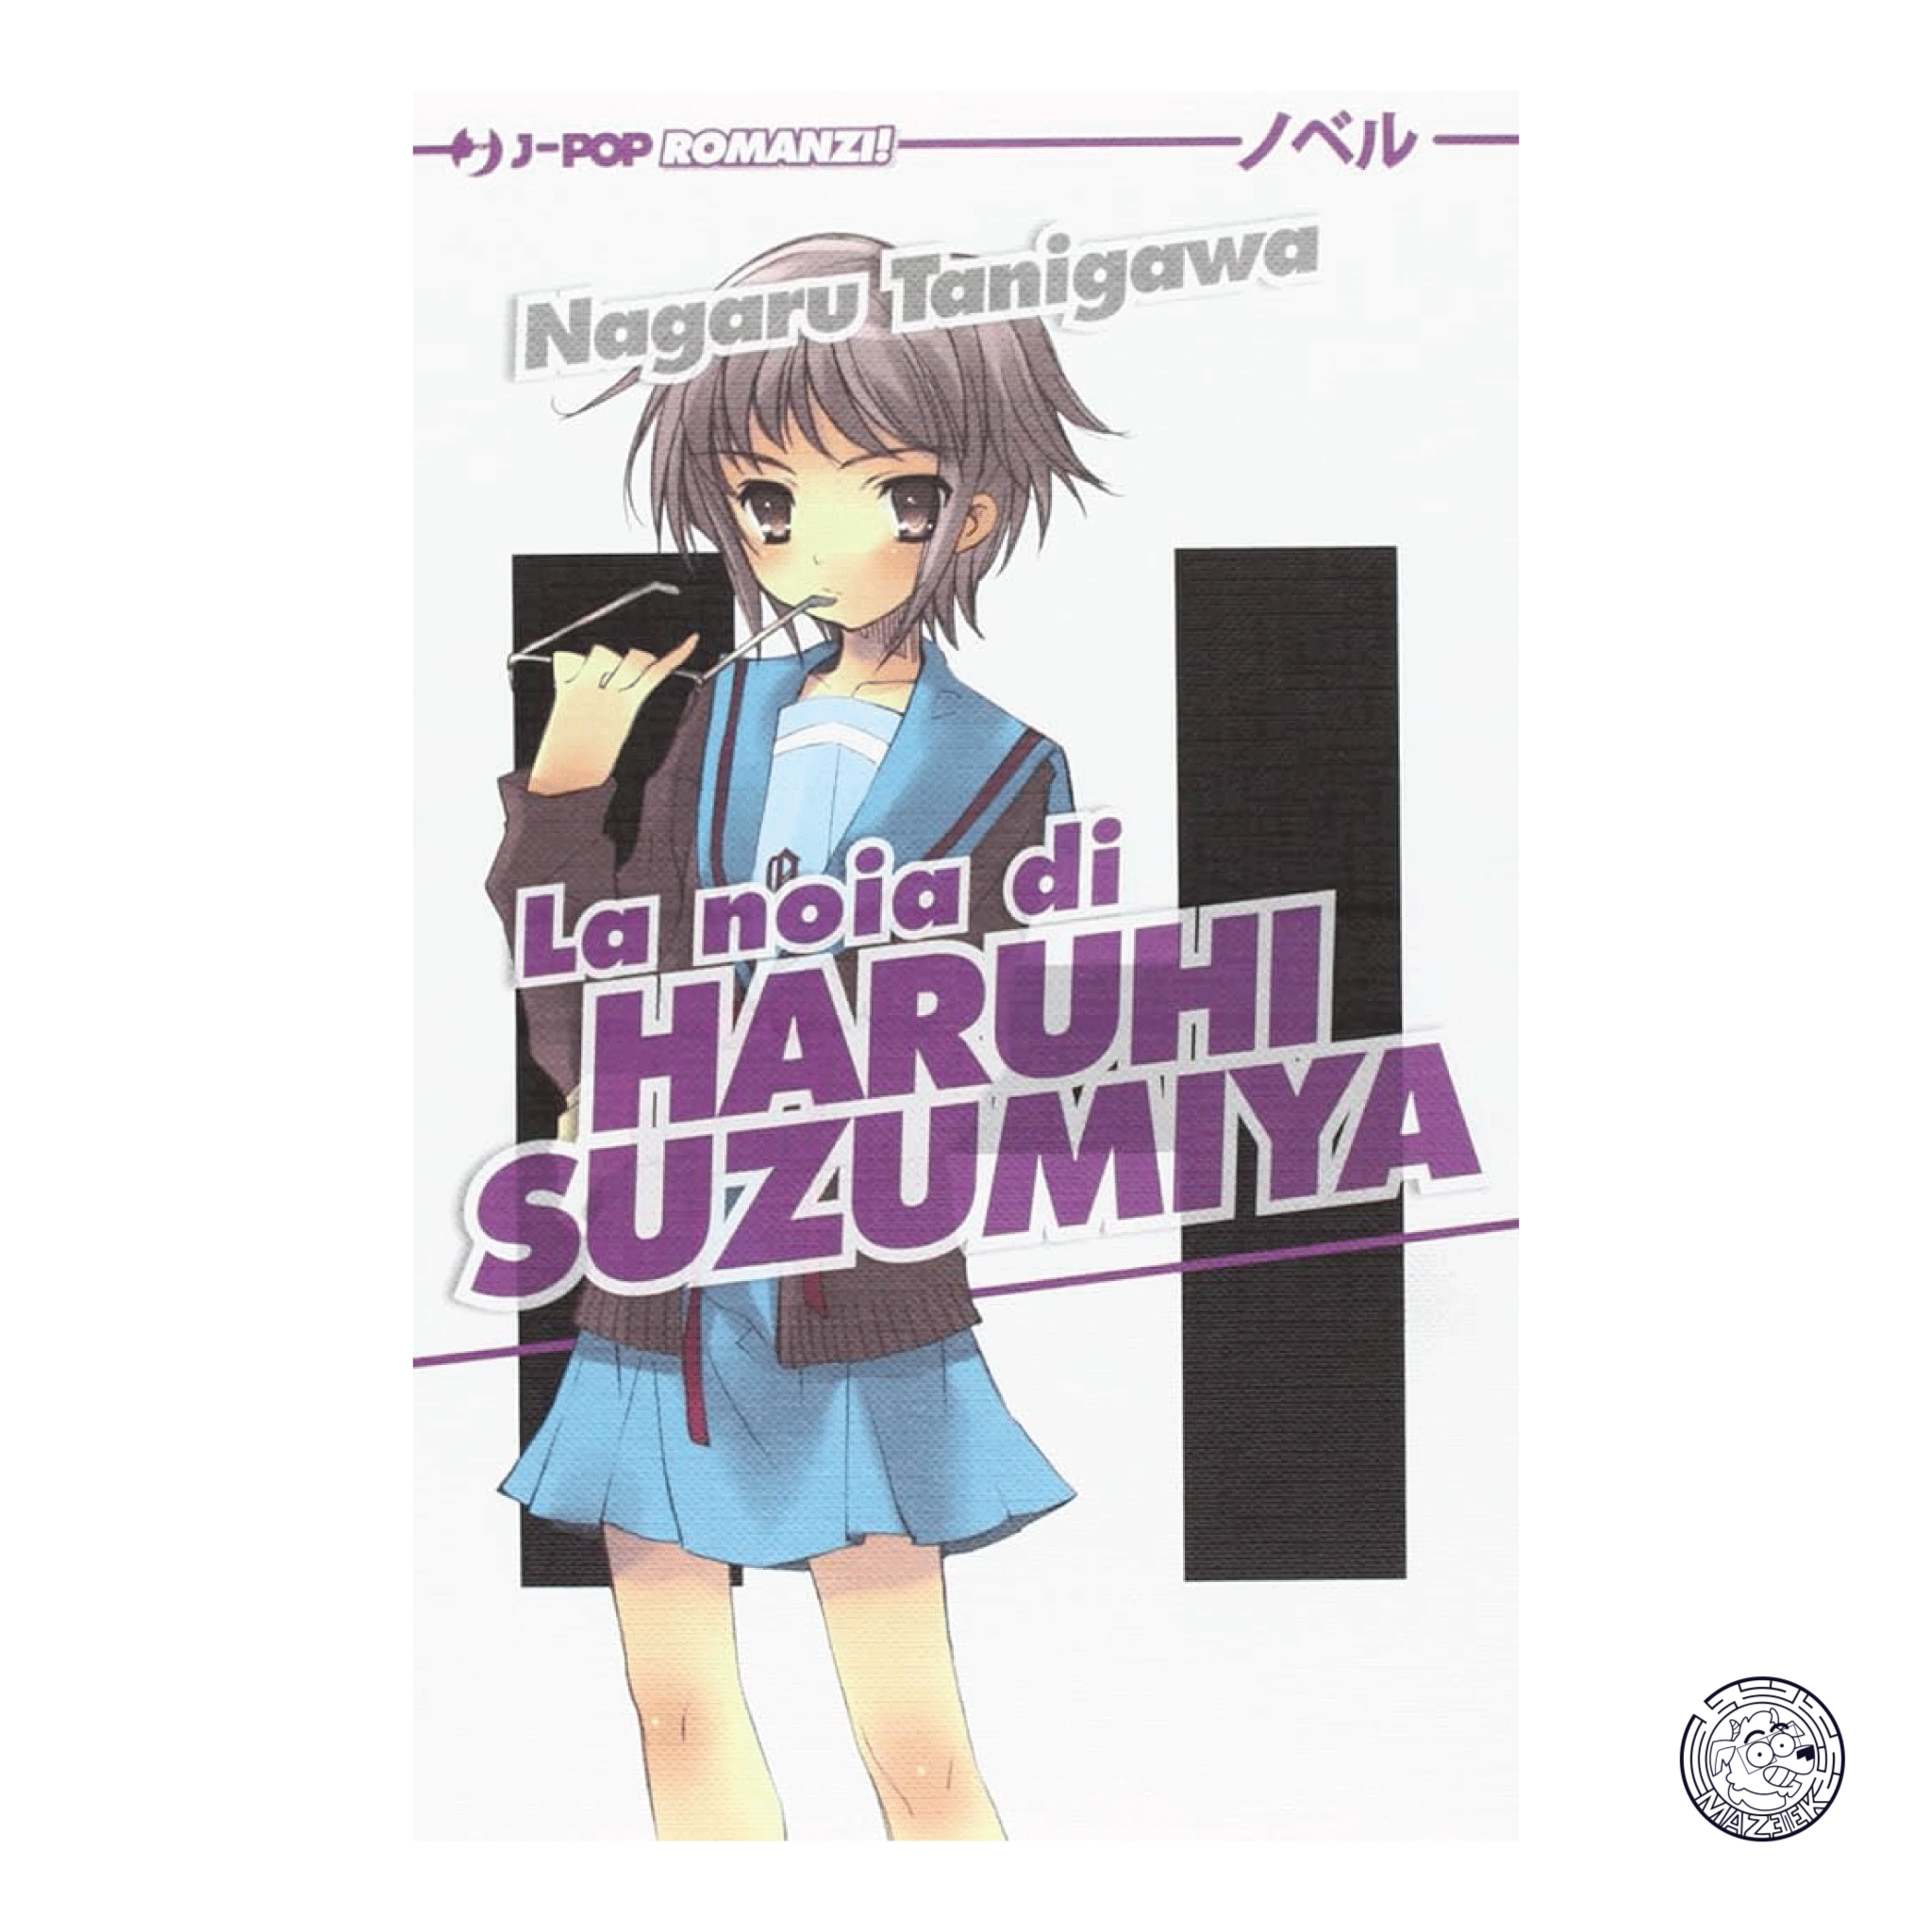 The Boredom of Haruhi Suzumiya